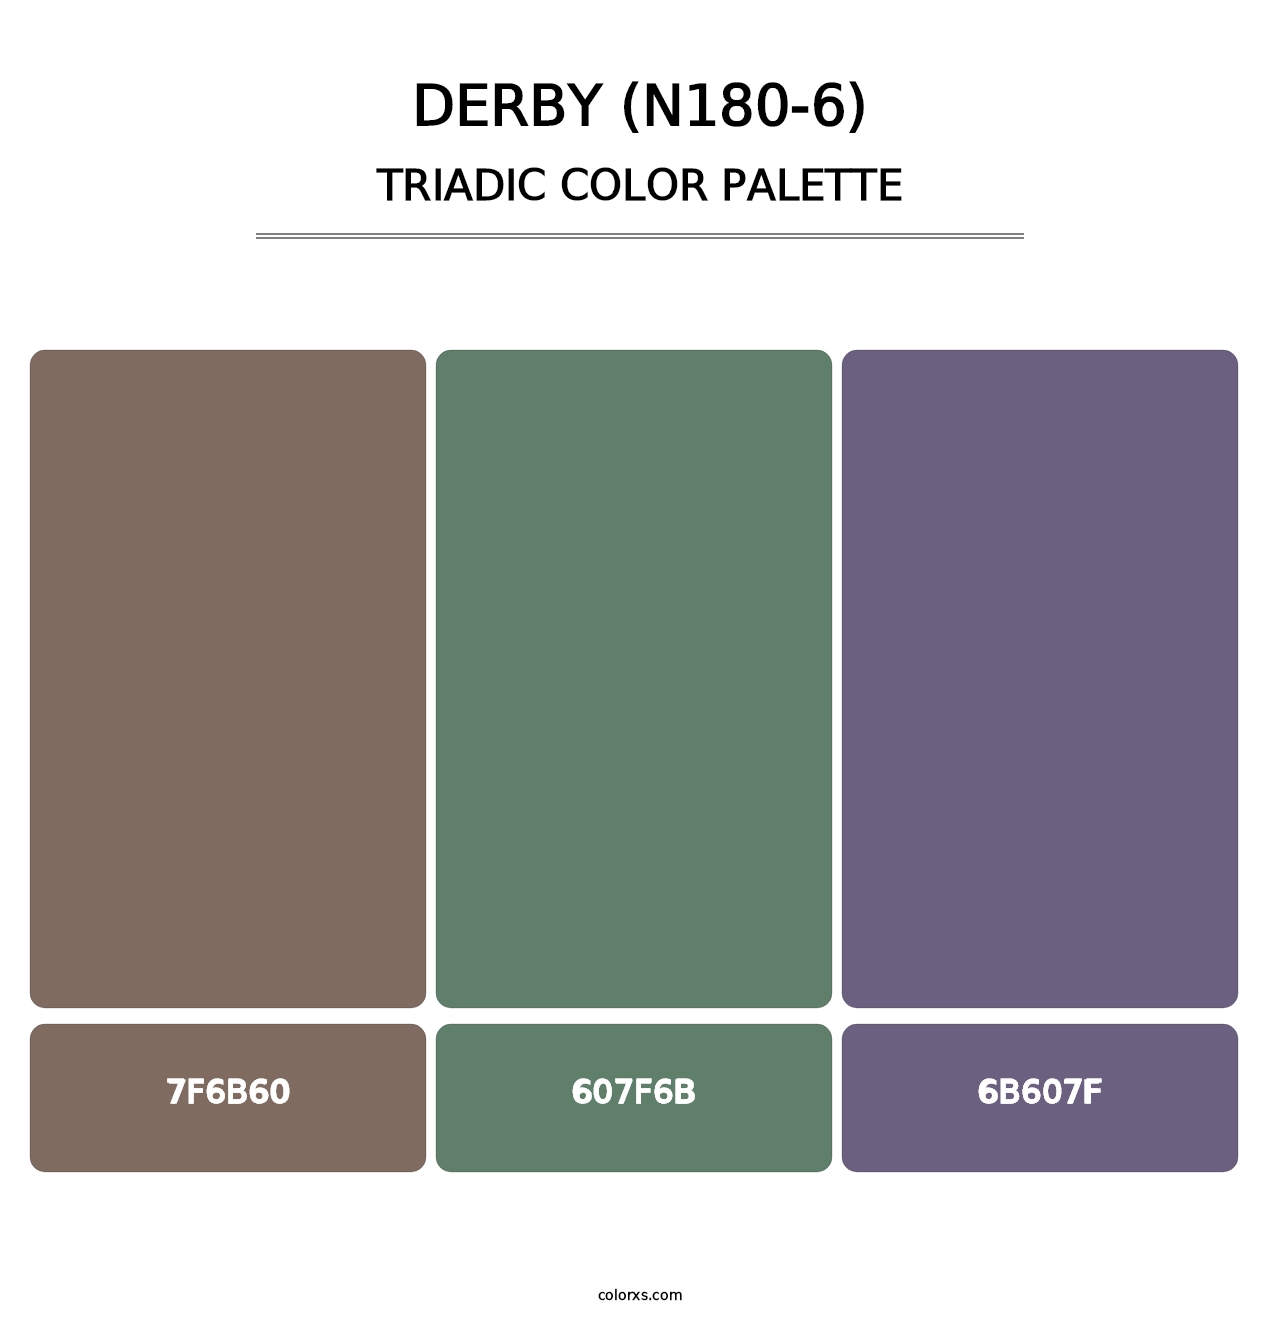 Derby (N180-6) - Triadic Color Palette